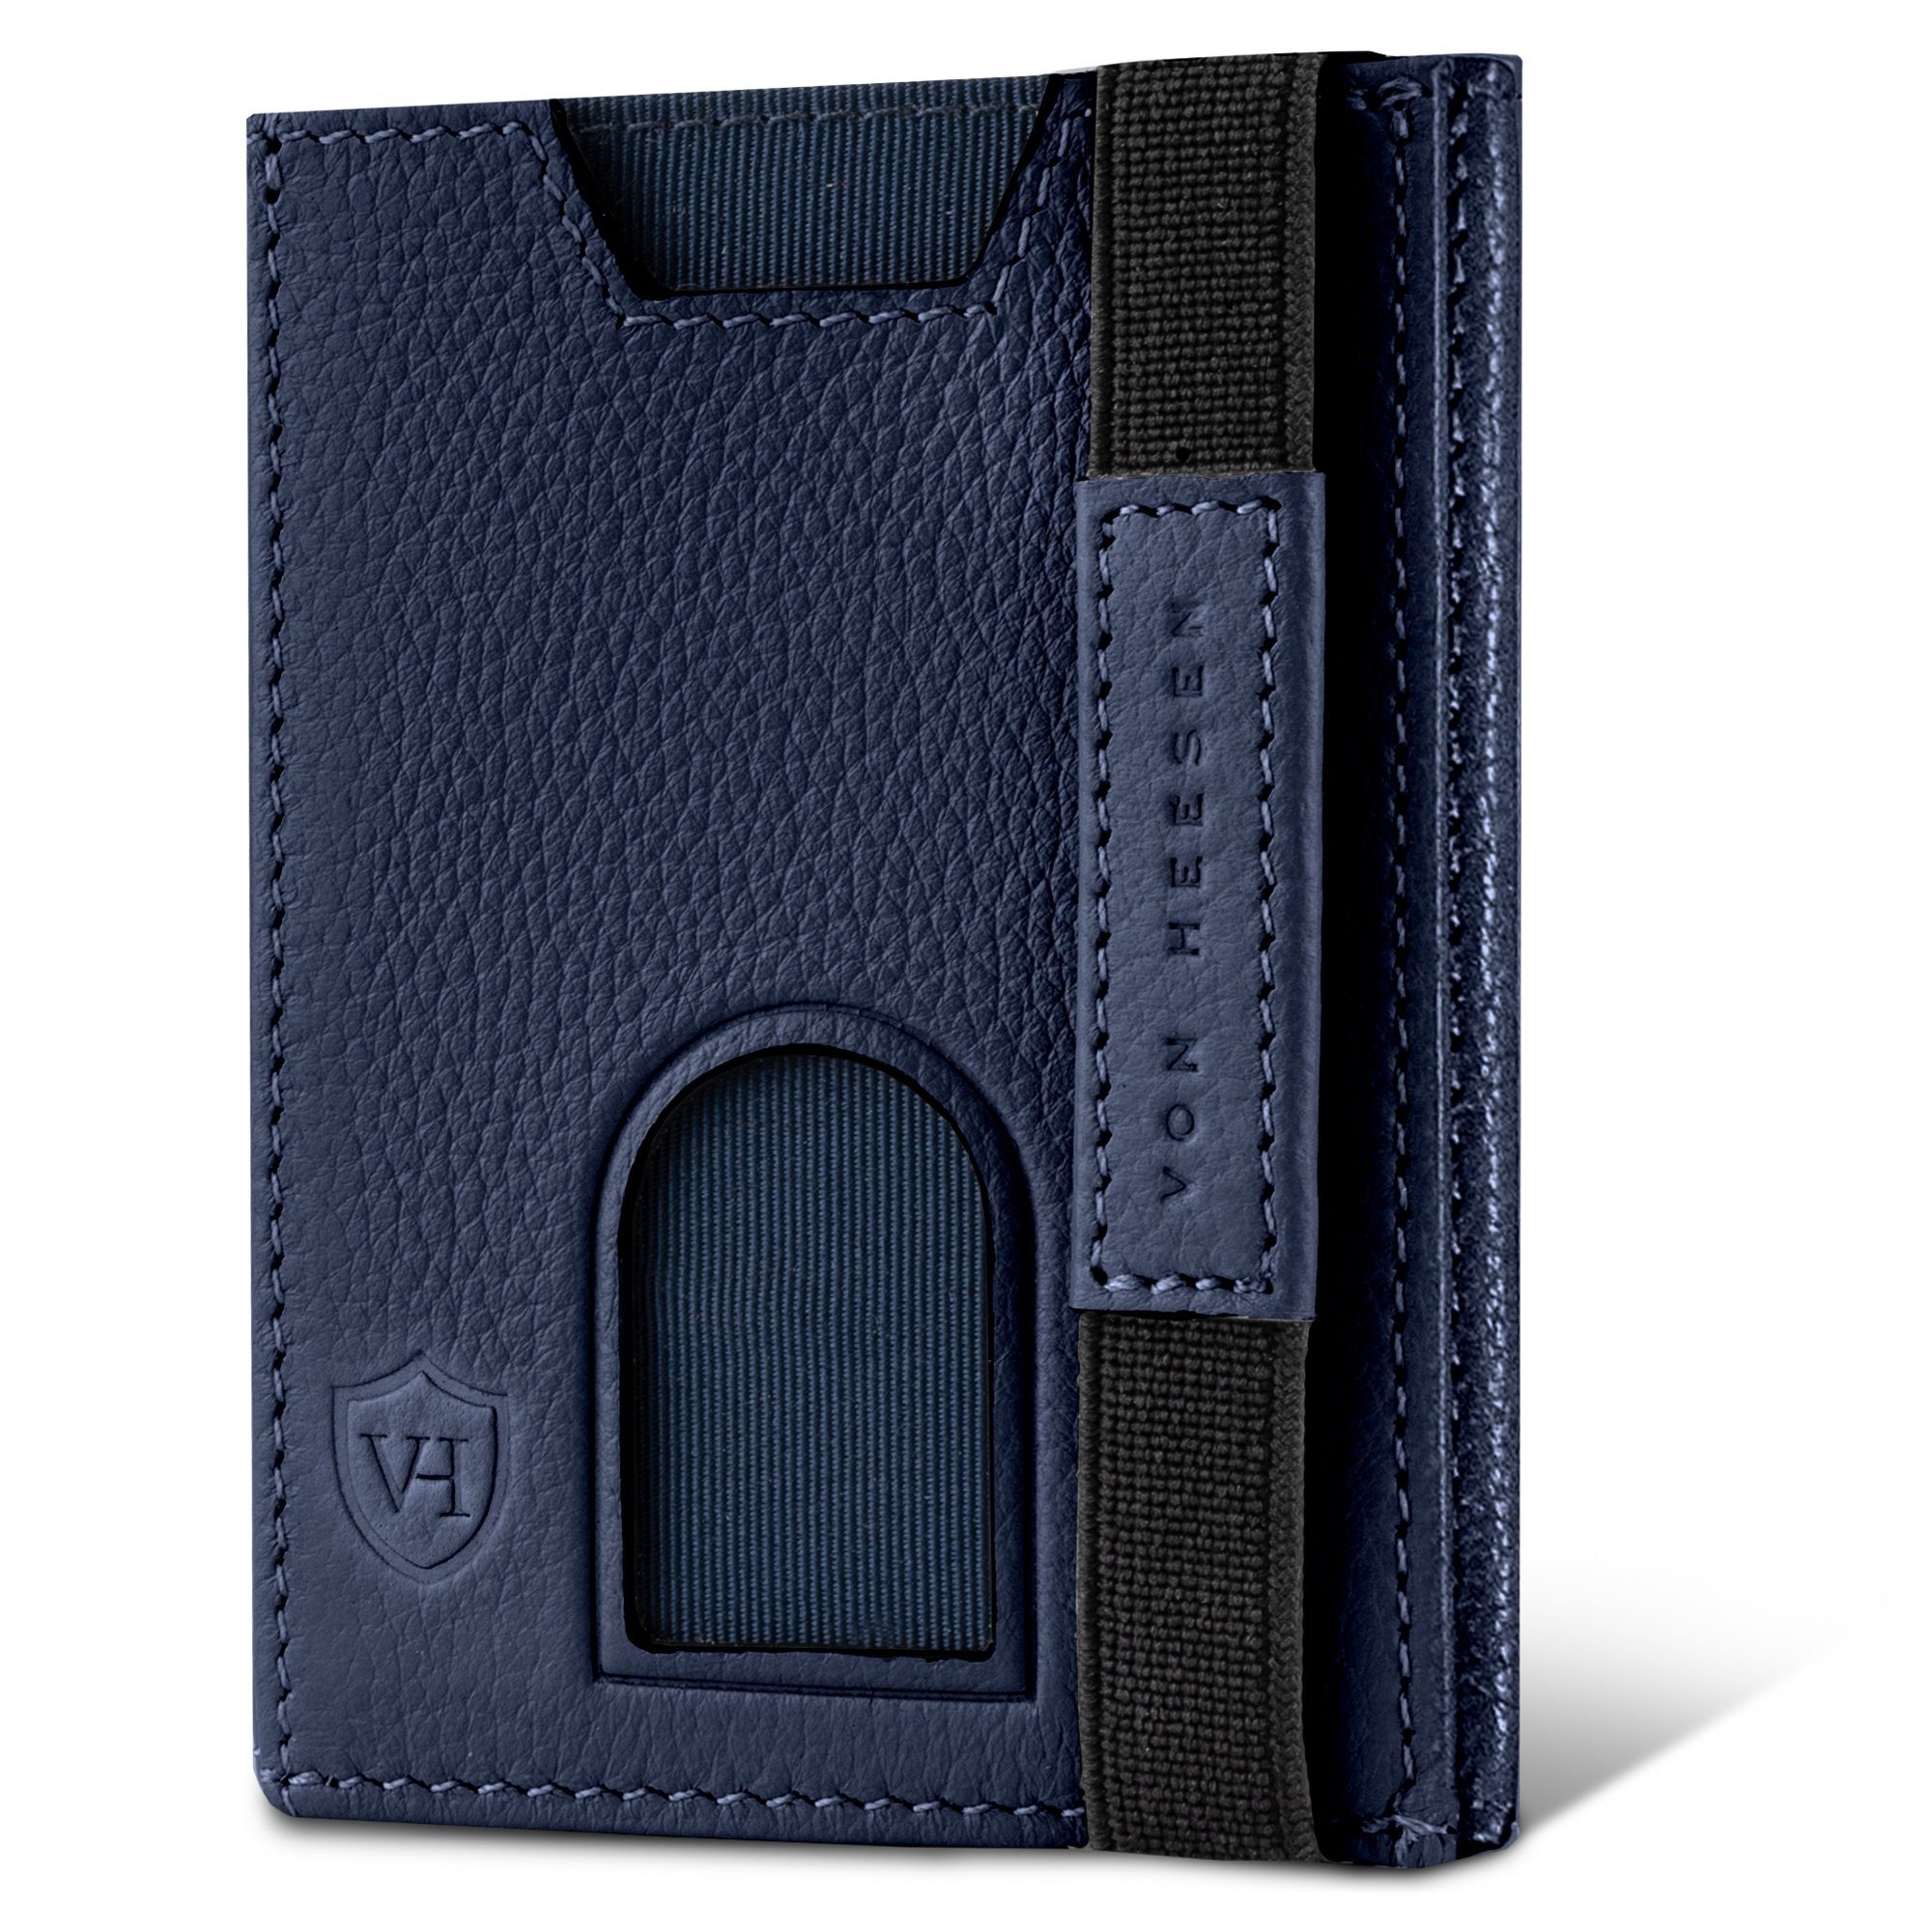 VON HEESEN Geldbörse Whizz Wallet mit 5 Kartenfächer & Mini-Münzfach, Slim Wallet Geldbeutel Portemonnaie inkl. RFID-Schutz & Geschenkbox Blau